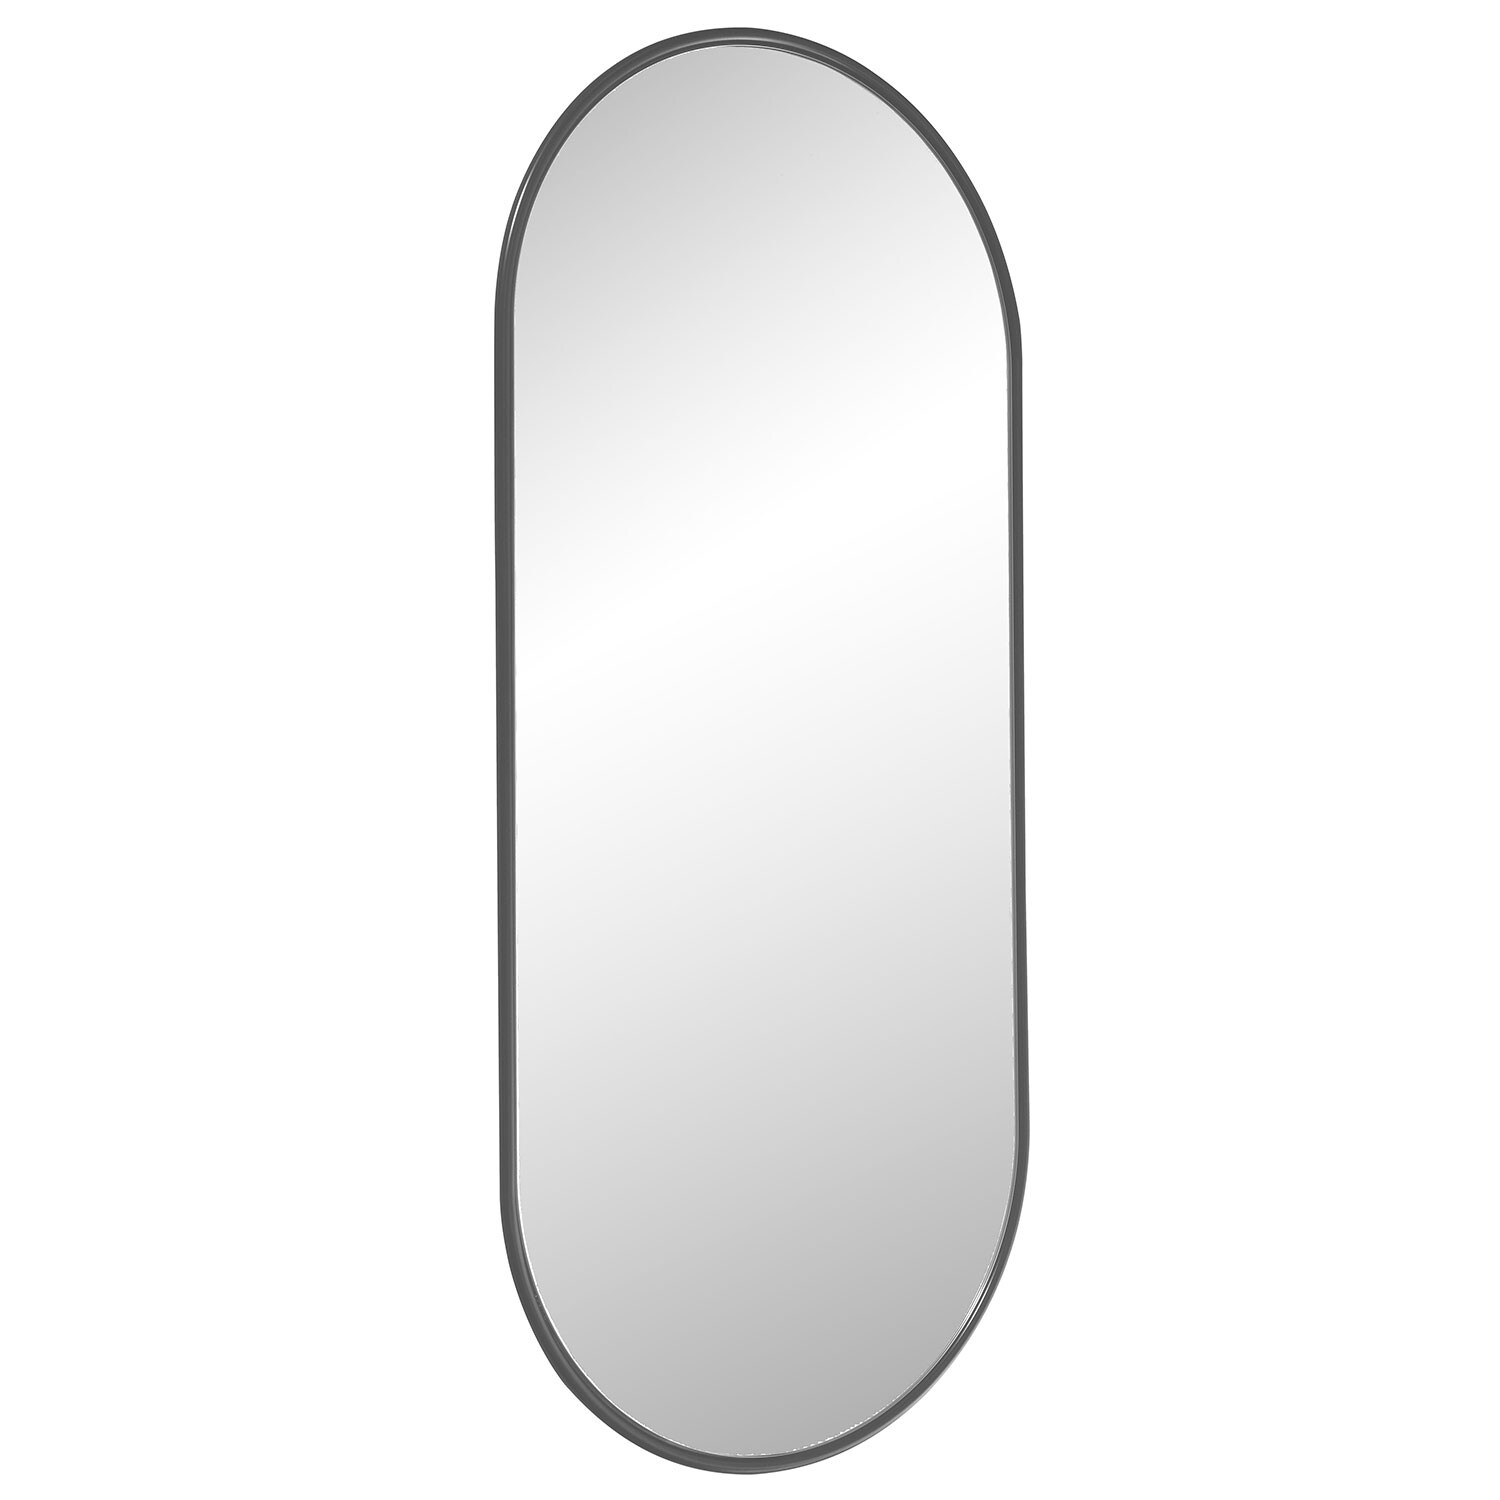 Smd Design Haga Basic Spegel 90 Cm - Väggspeglar Svart